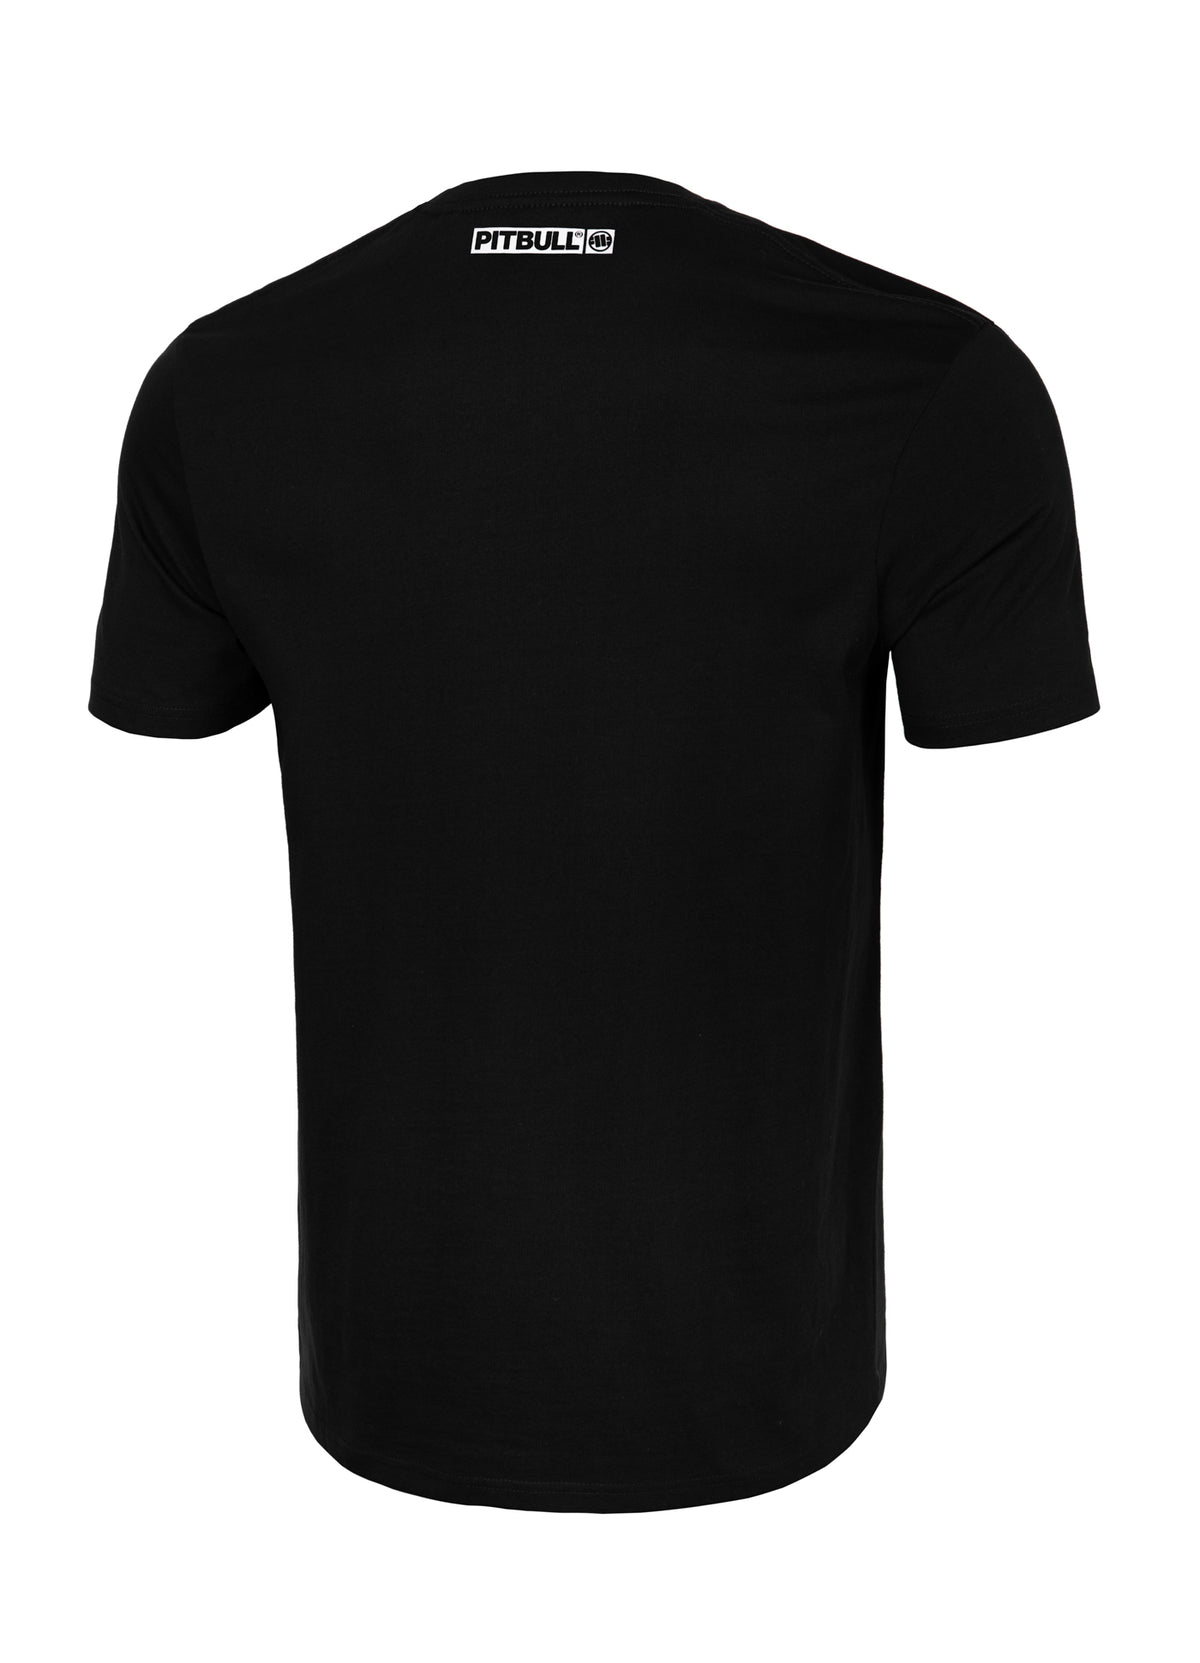 HILLTOP Lightweight Black T-shirt - Pitbullstore.eu